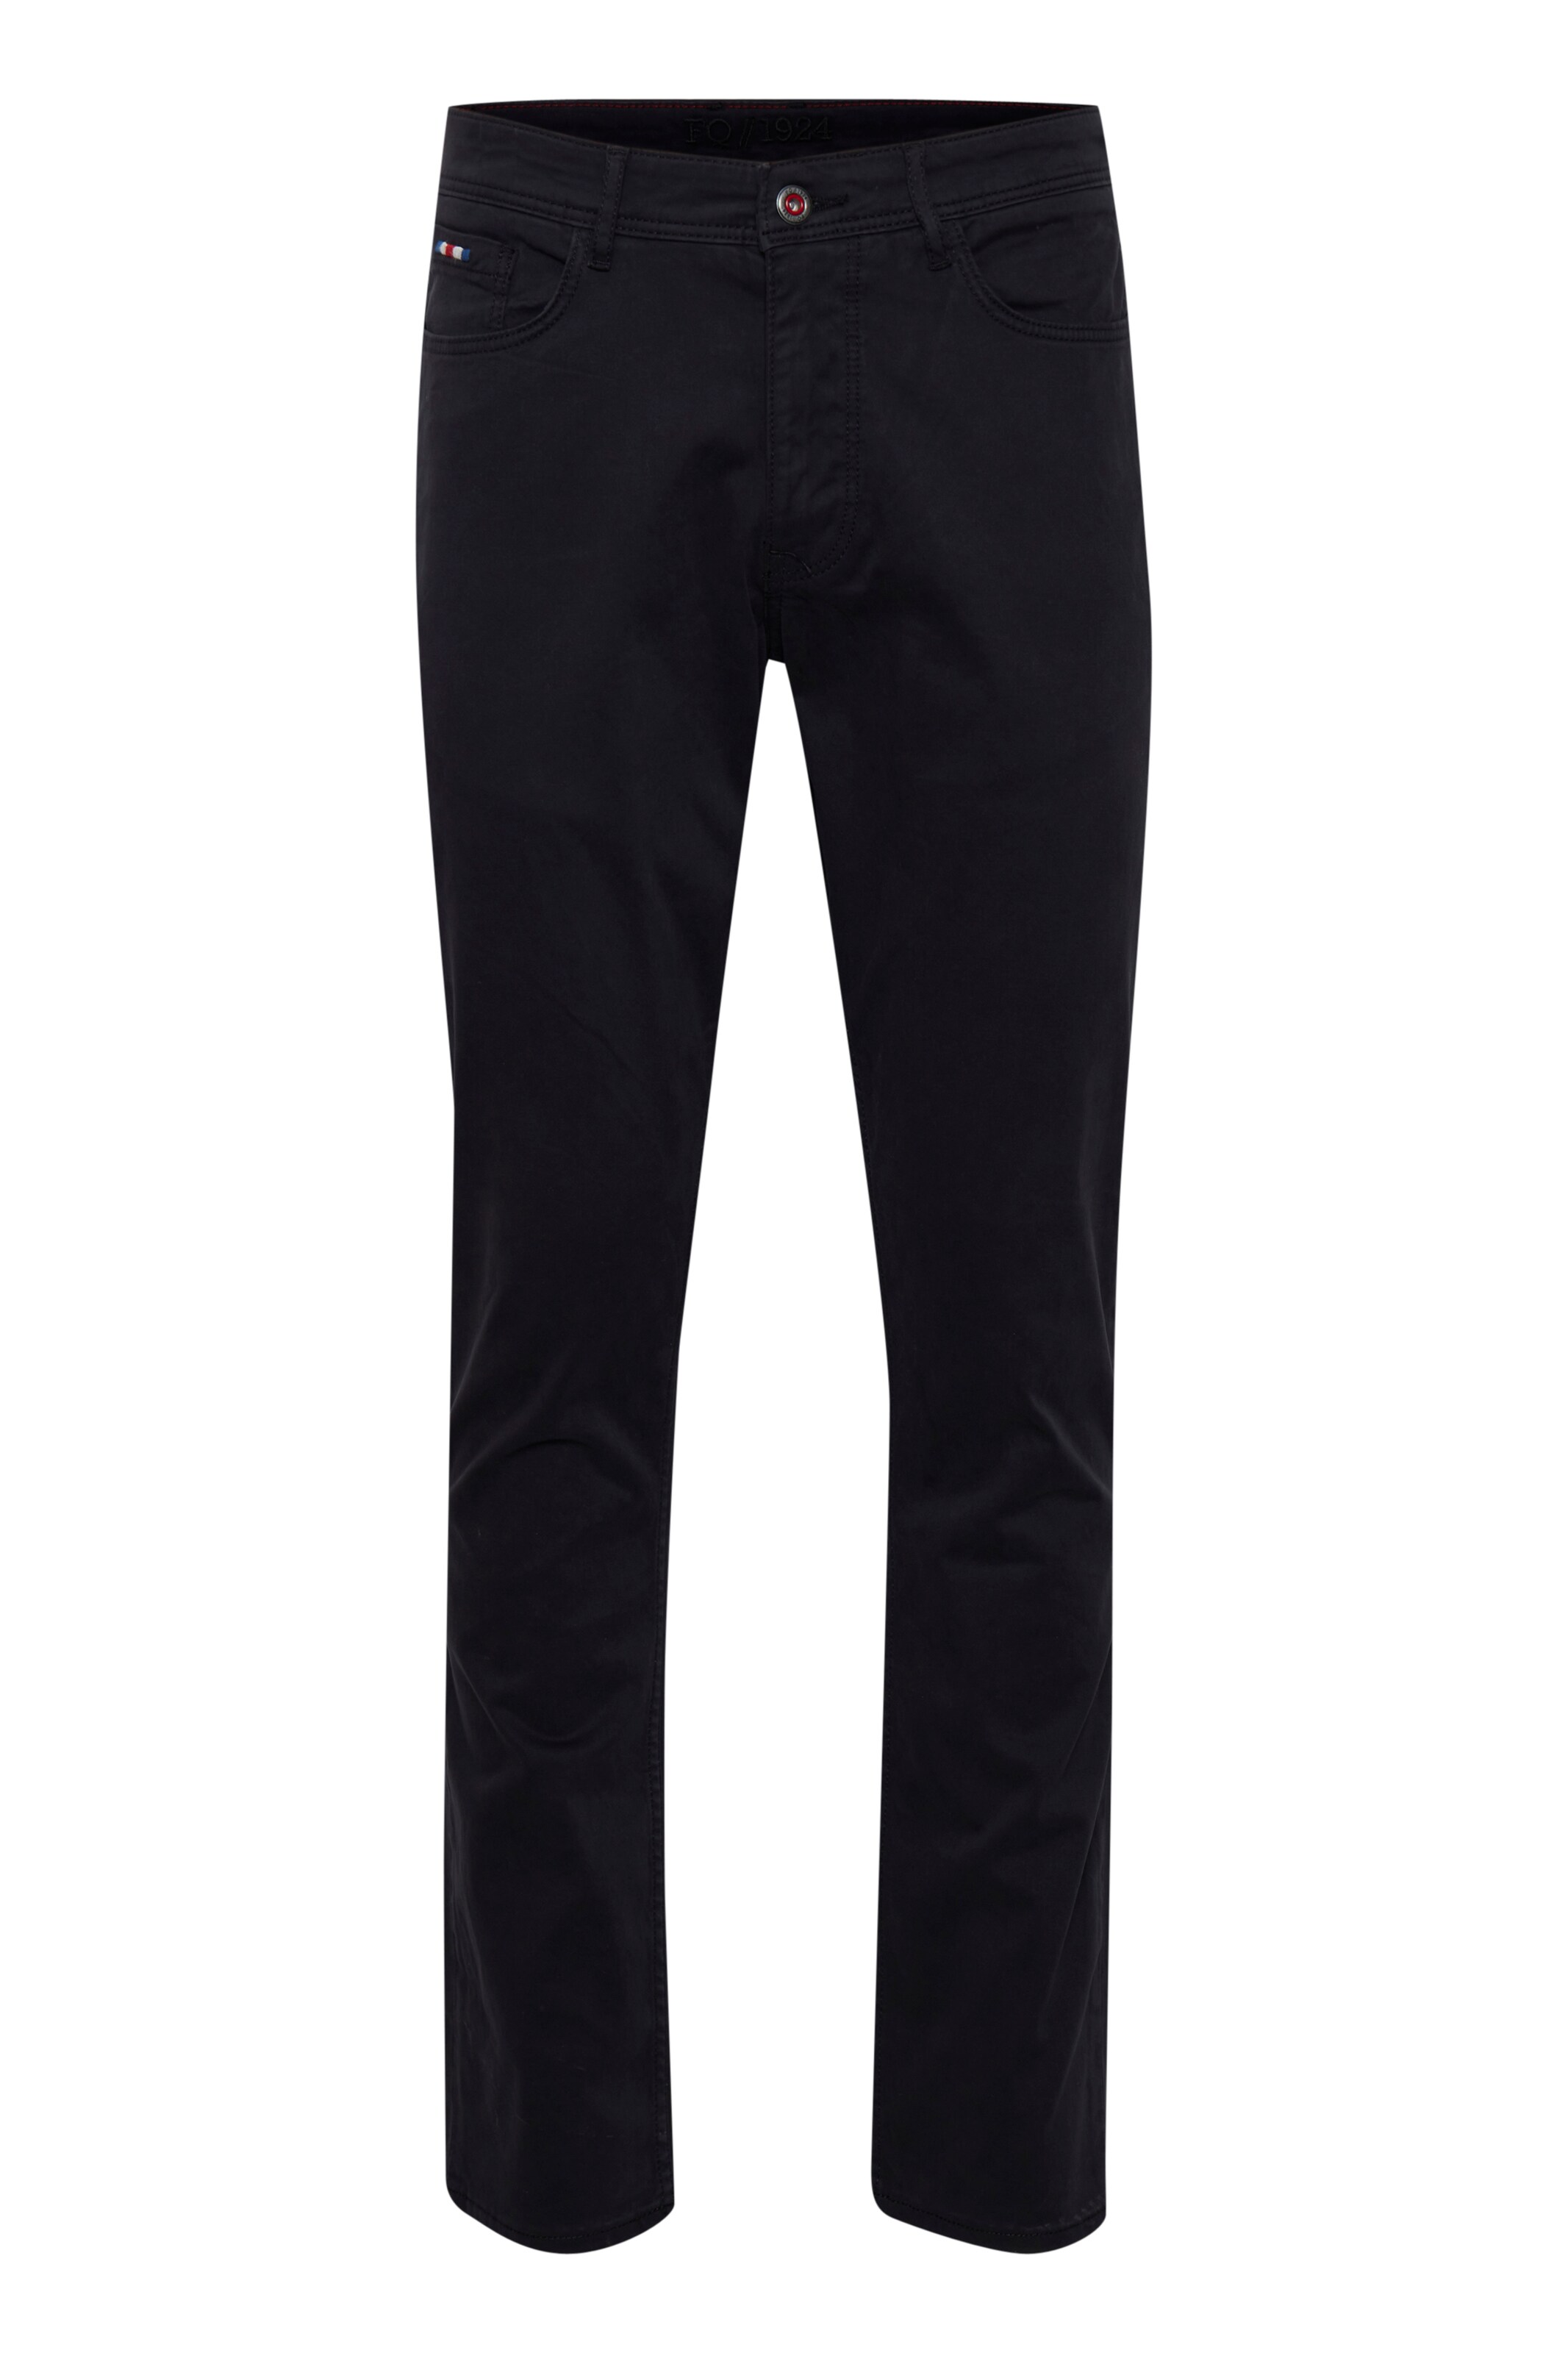 Männer Große Größen FQ1924 5-Pocket-Jeans 'Joshua' in Schwarz - QQ18765